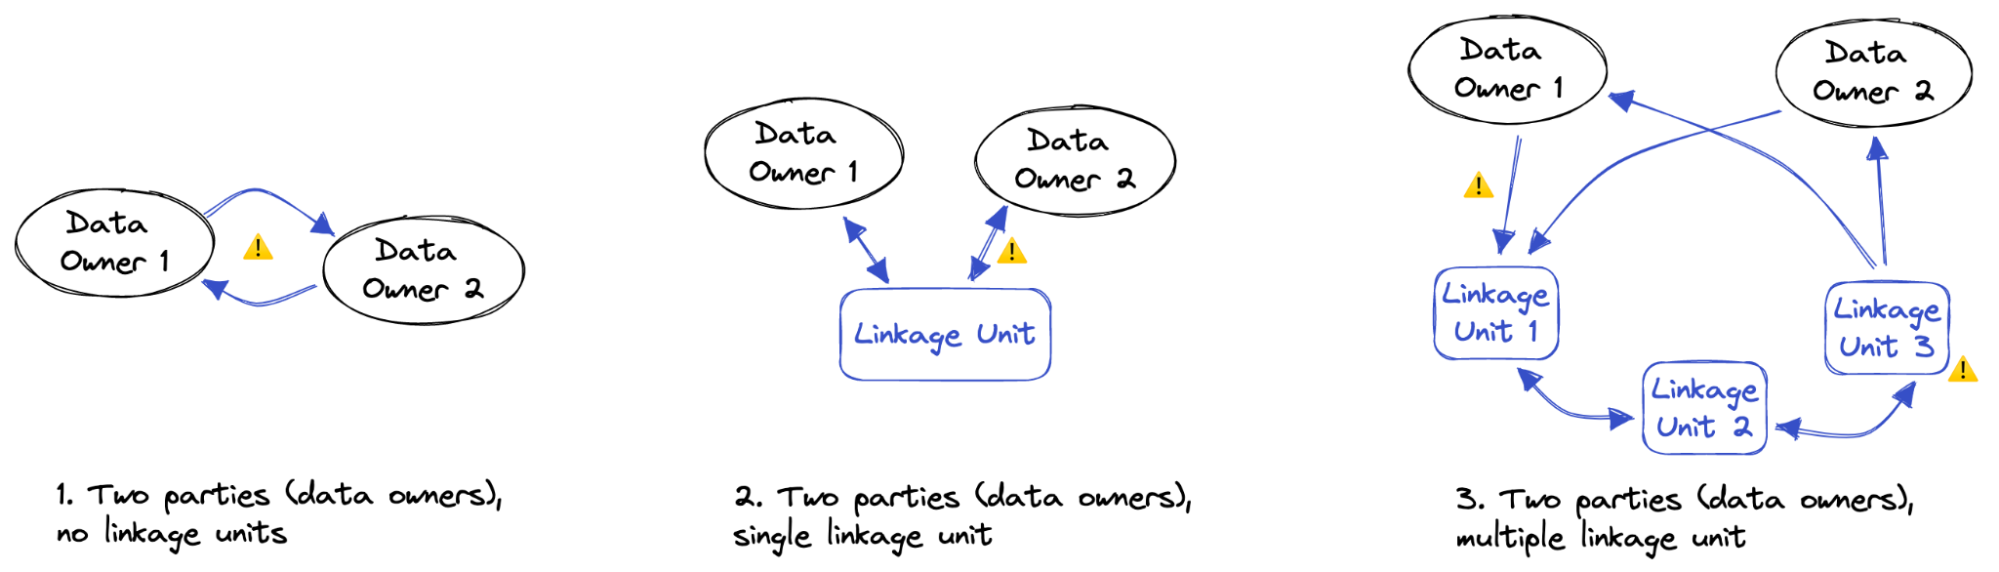 Scheme of multiple data linkage scenarios between two data owners 